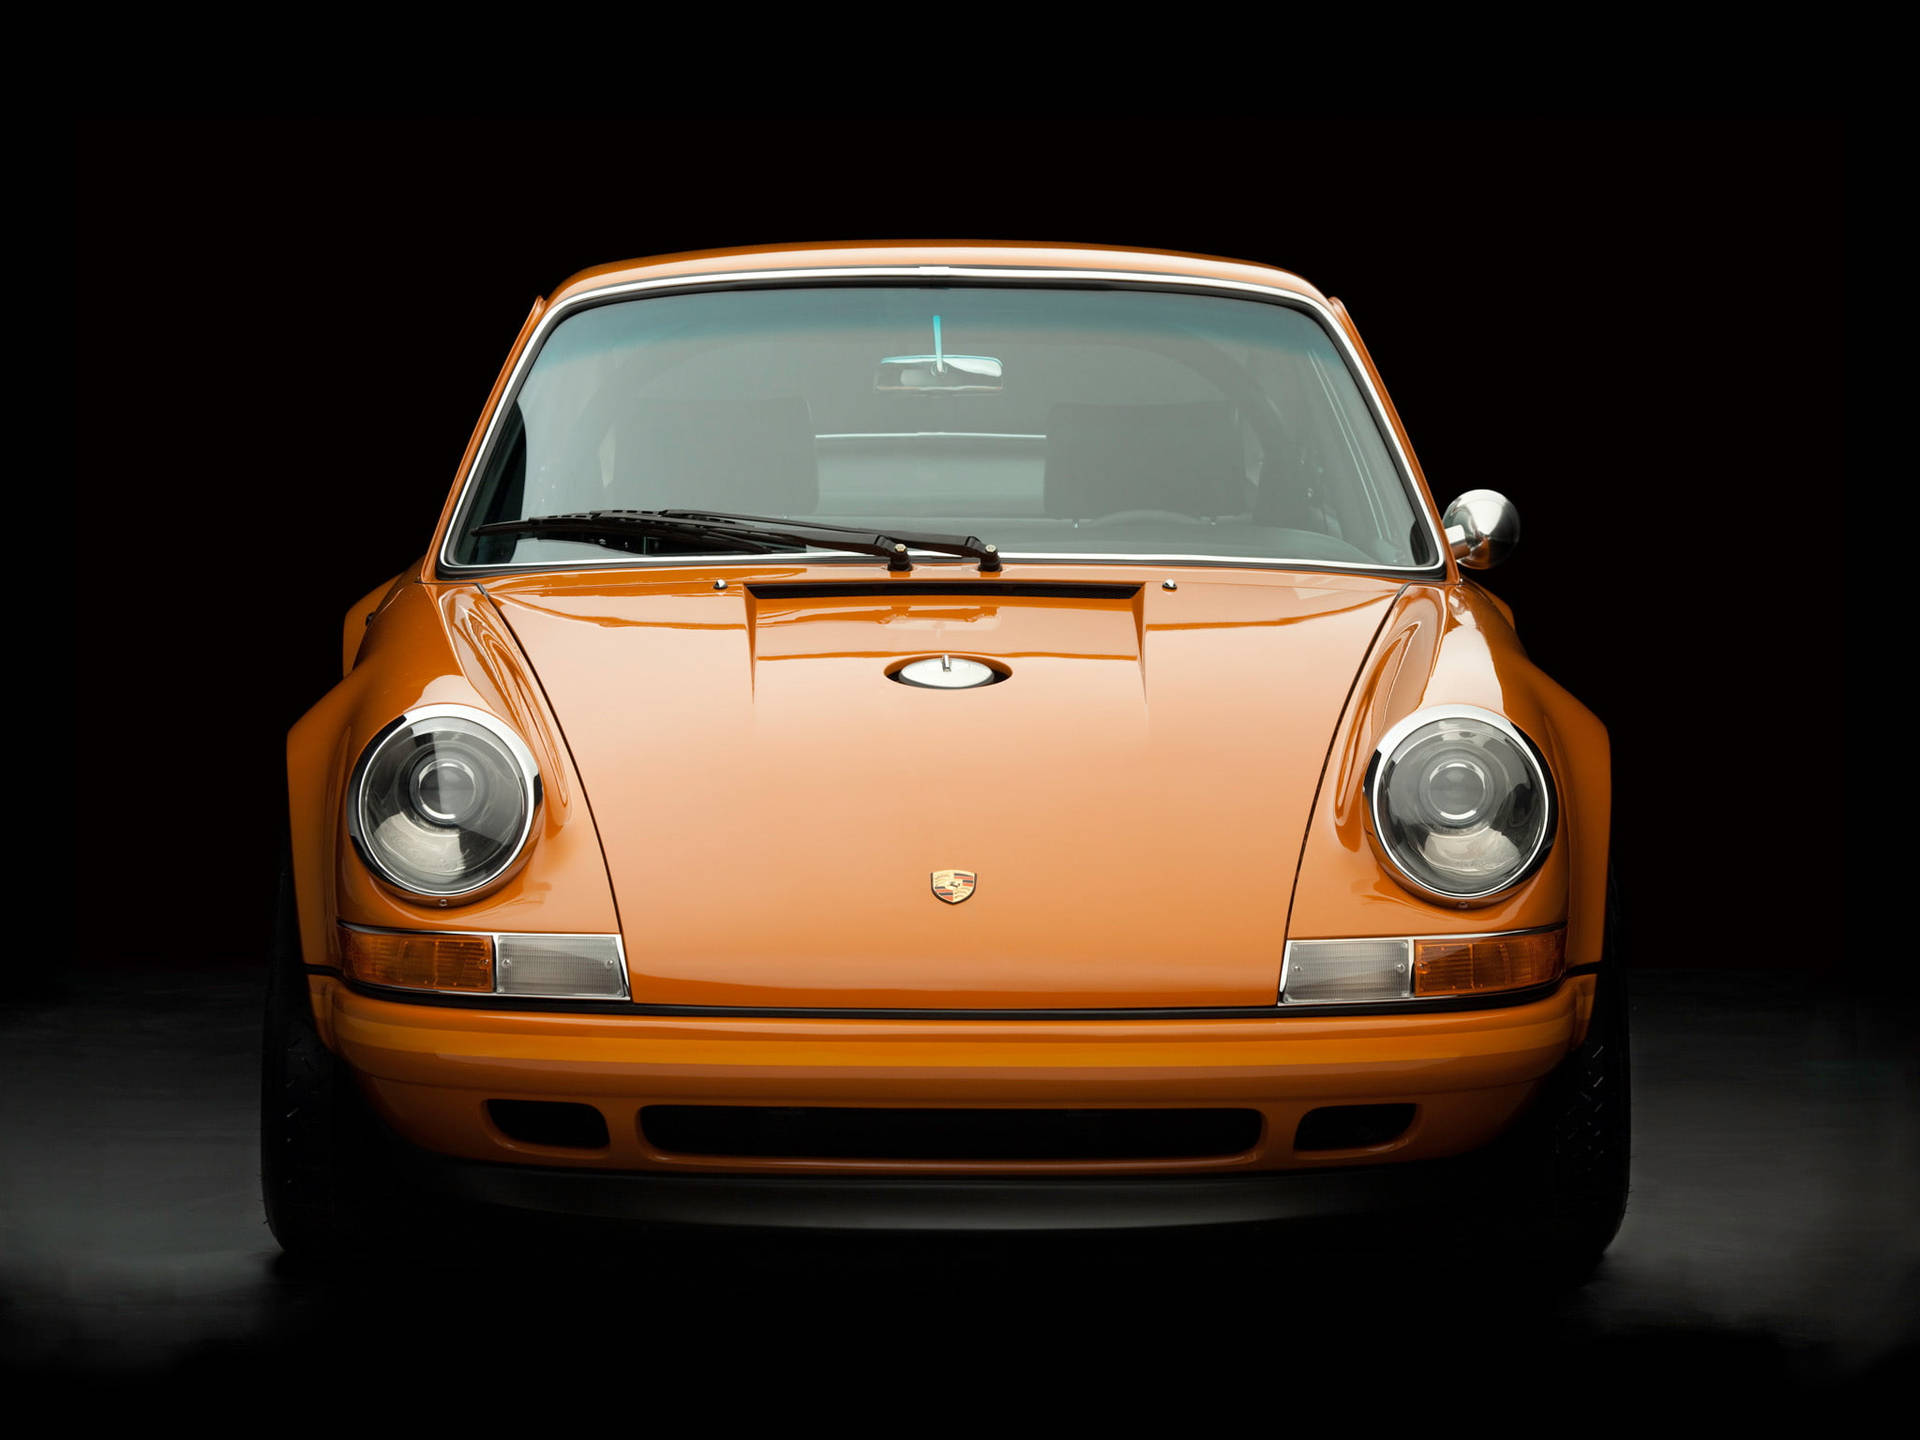 Orange Sanger Porsche Forside Kofanger Scene Wallpaper